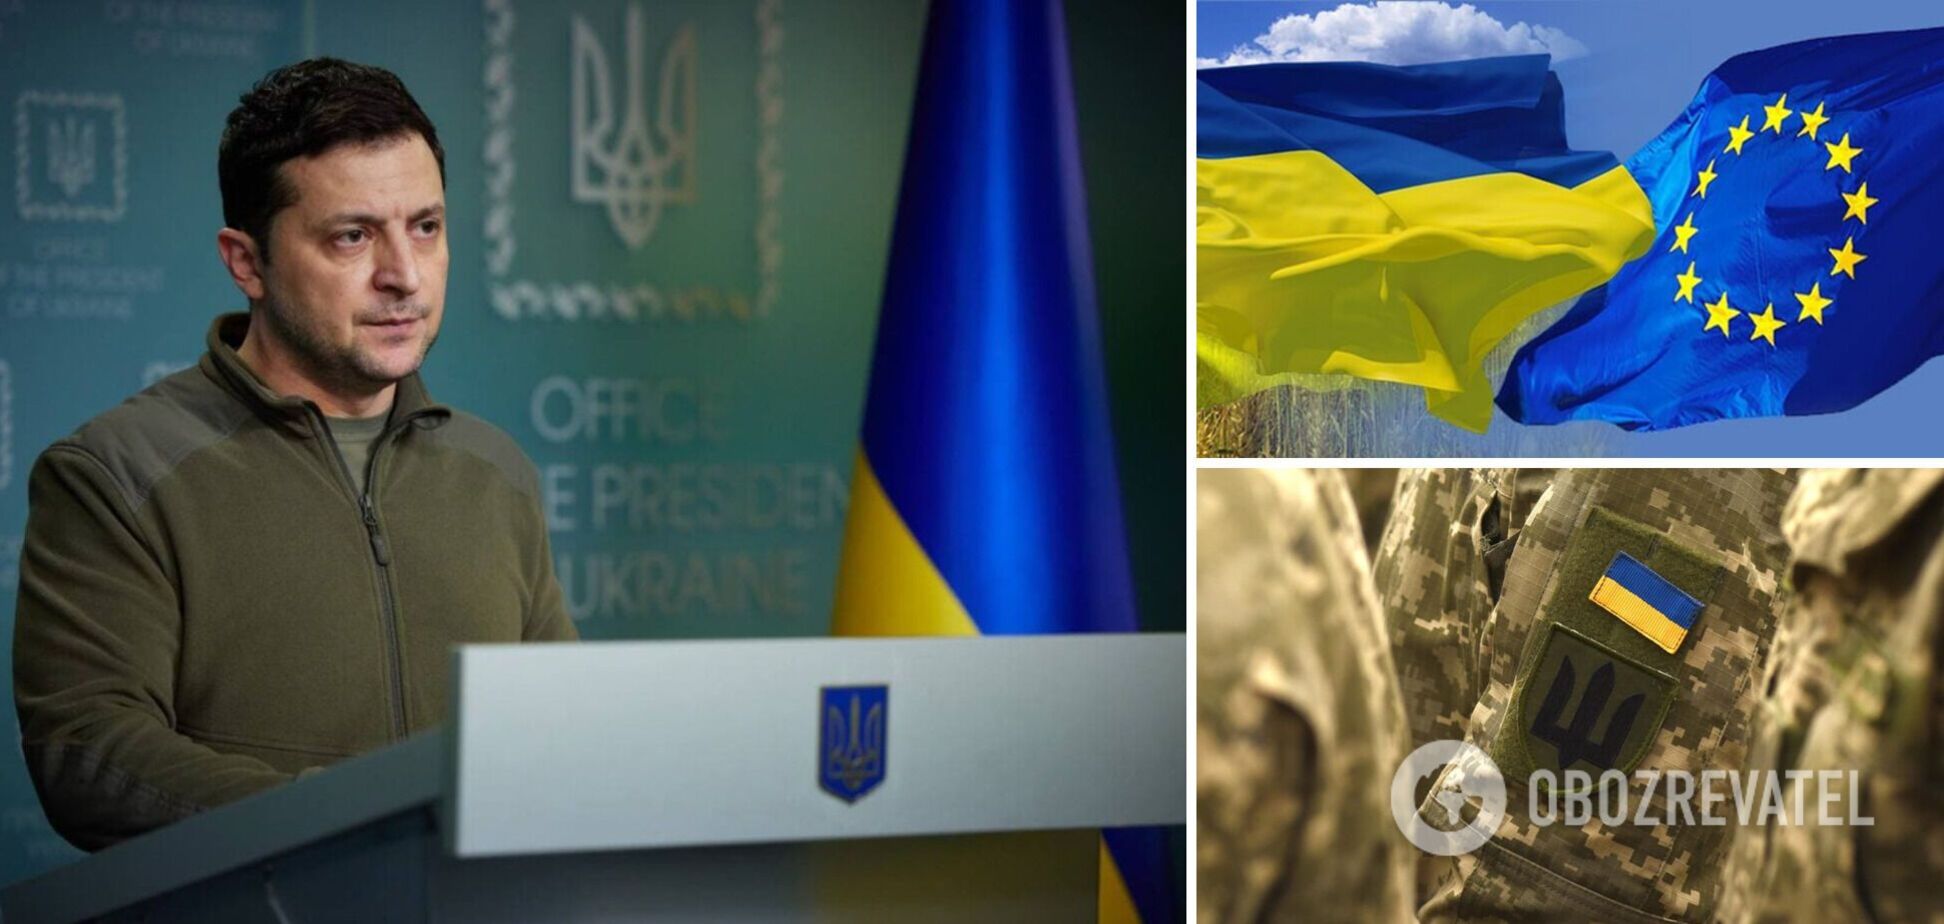 Украина просит о присоединении к ЕС по новой спецпроцедуре и продолжает борьбу. Обращение Зеленского